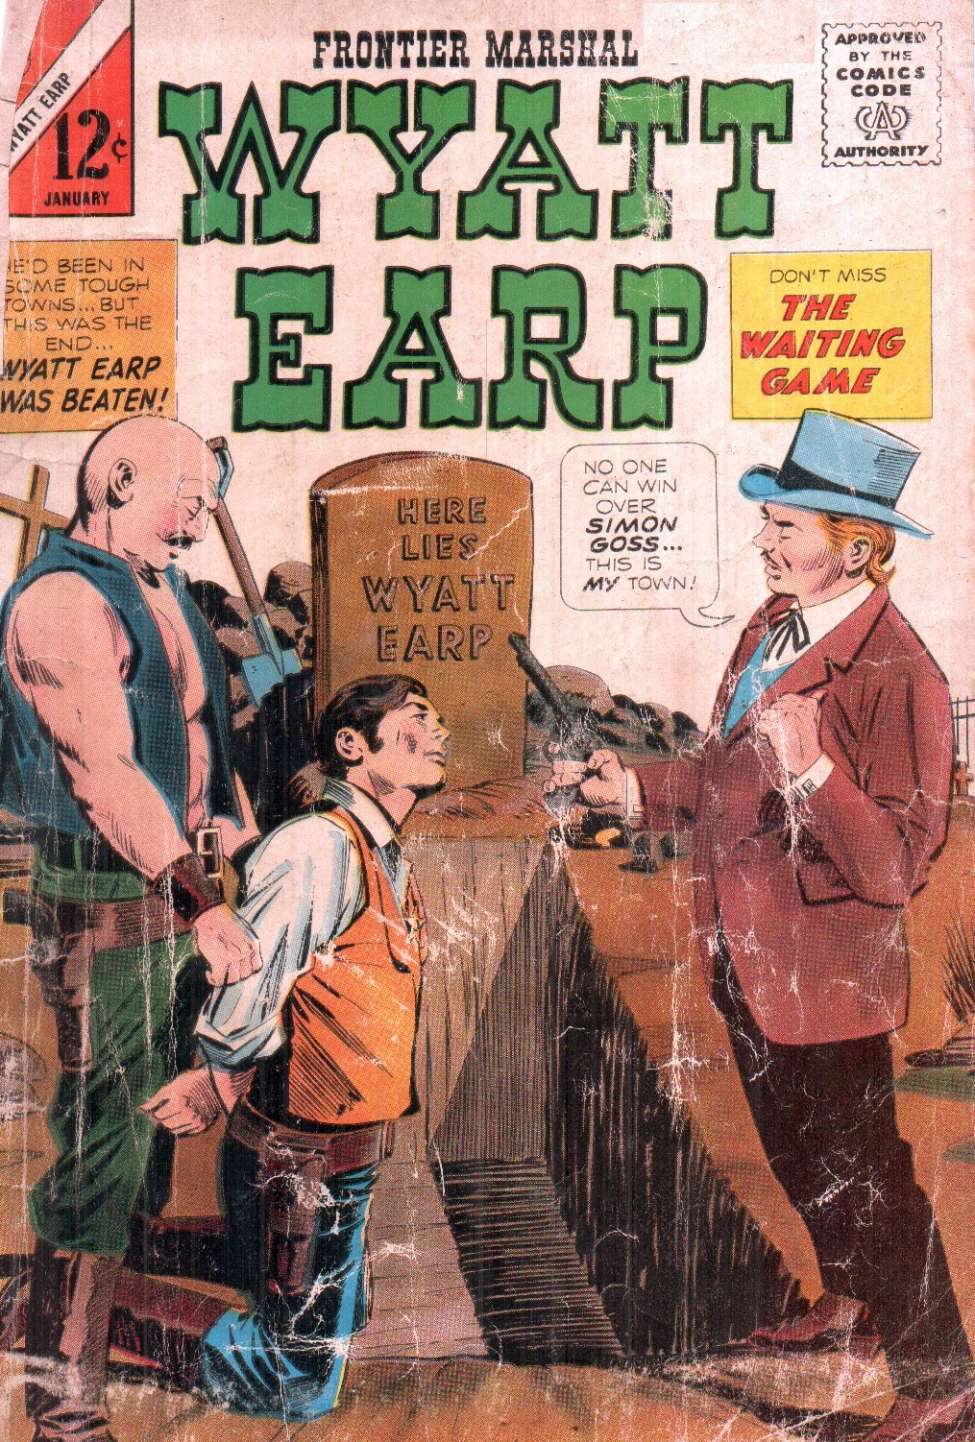 Book Cover For Wyatt Earp Frontier Marshal 56